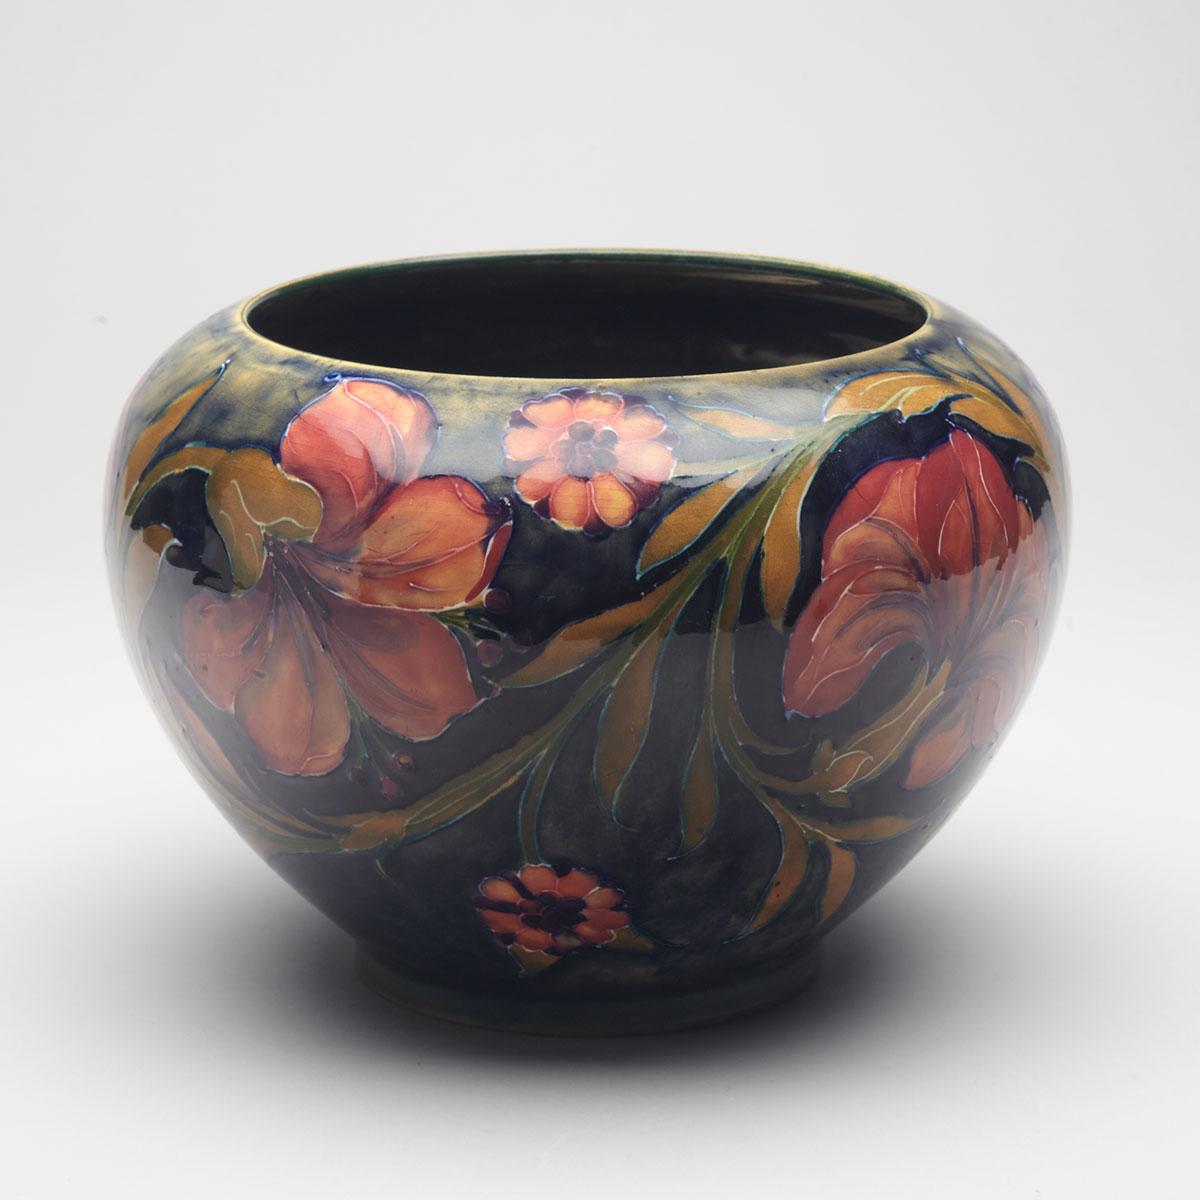 Moorcroft Spanish Vase, c.1916-18